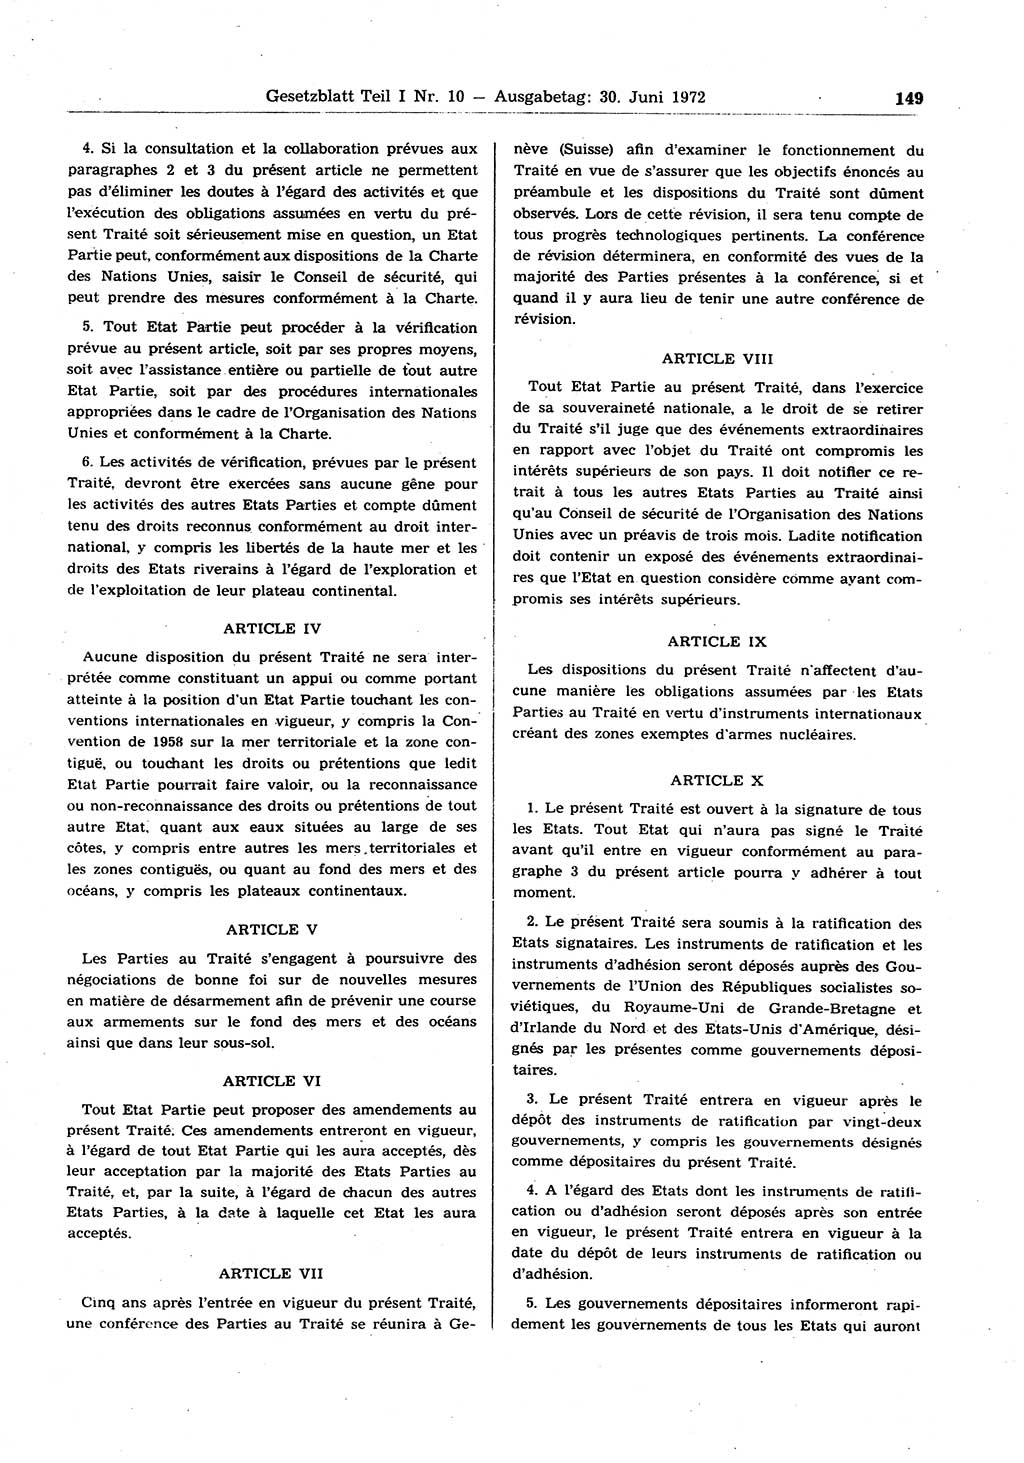 Gesetzblatt (GBl.) der Deutschen Demokratischen Republik (DDR) Teil Ⅰ 1972, Seite 149 (GBl. DDR Ⅰ 1972, S. 149)